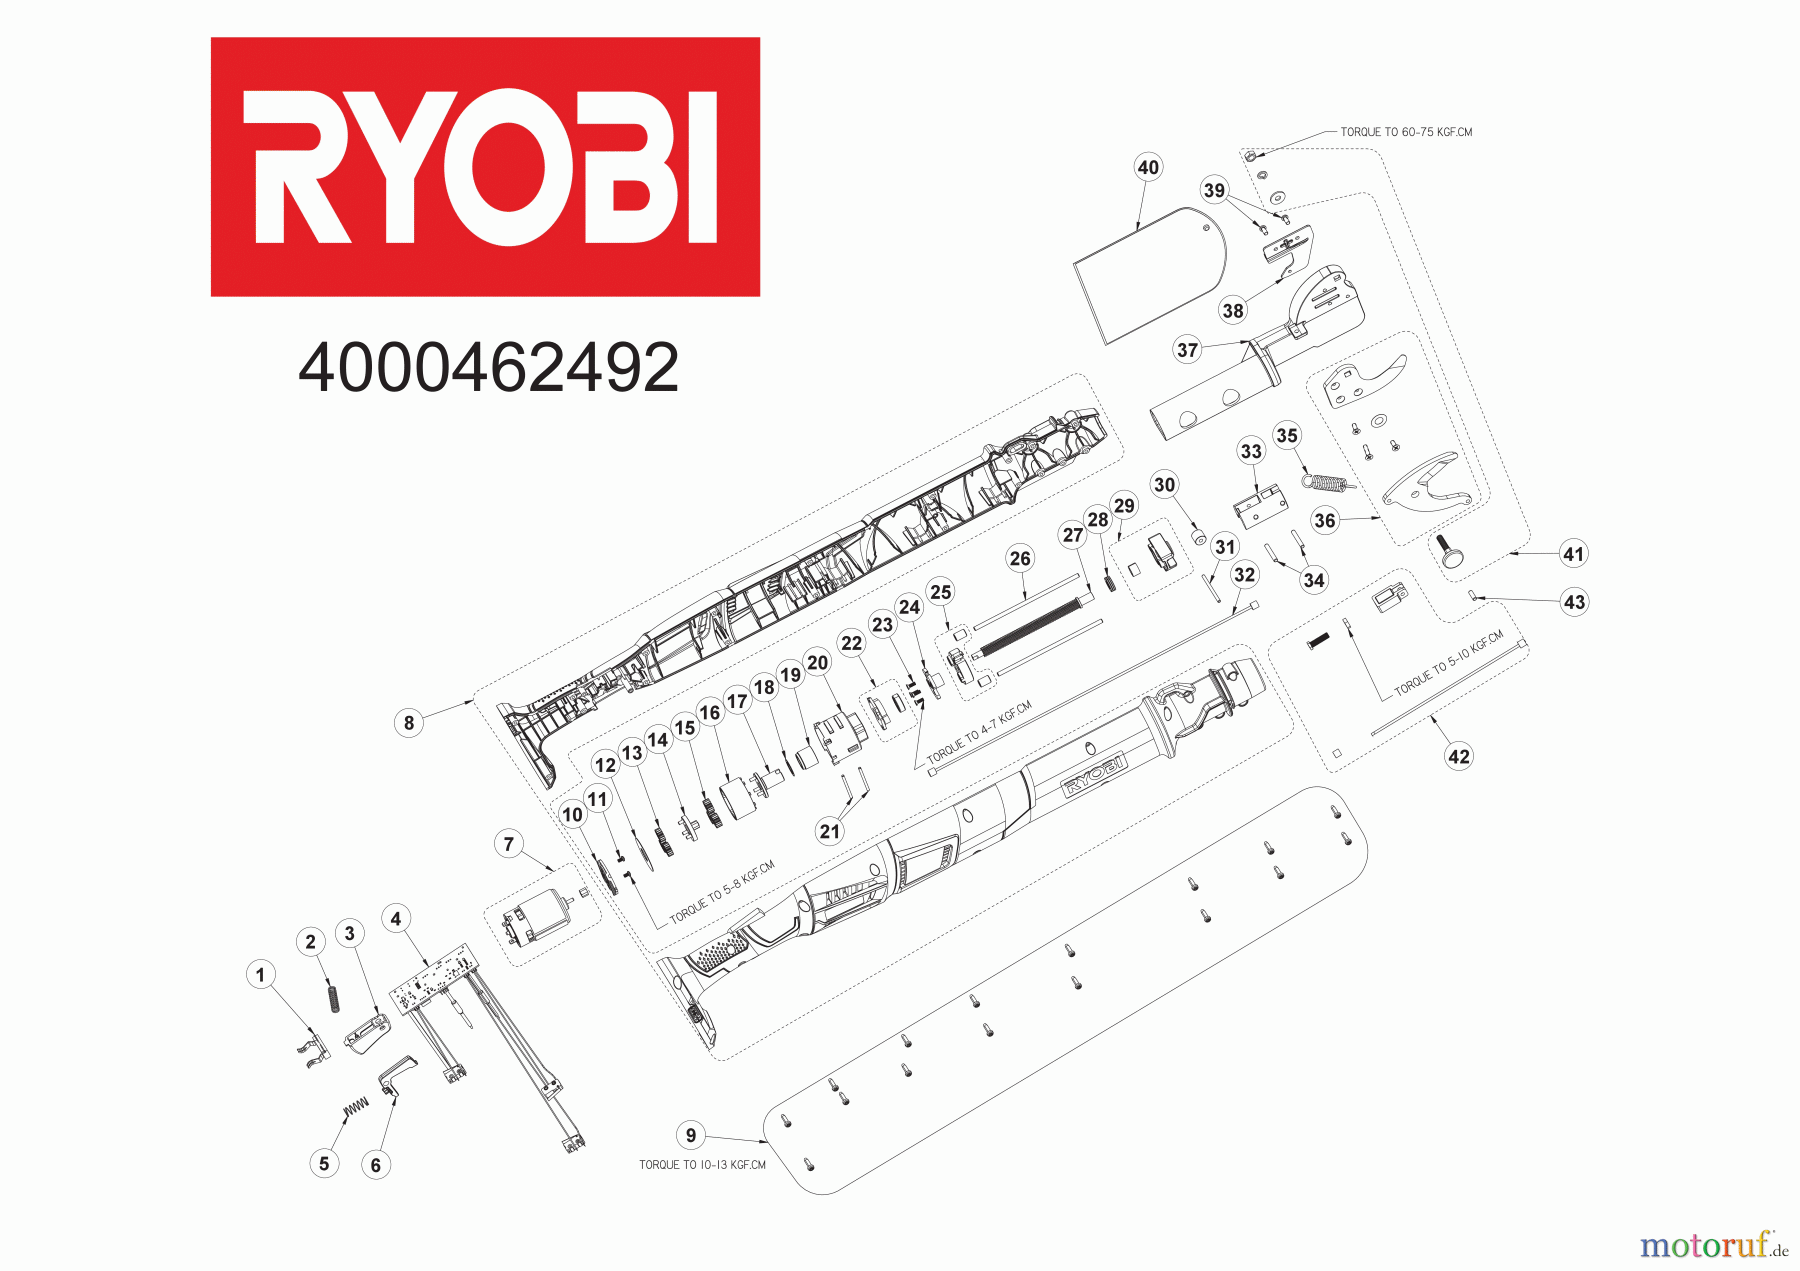  Ryobi Ast-, Strauch- und Grasscheren OLP1832B Astschere OLP1832B Astschere